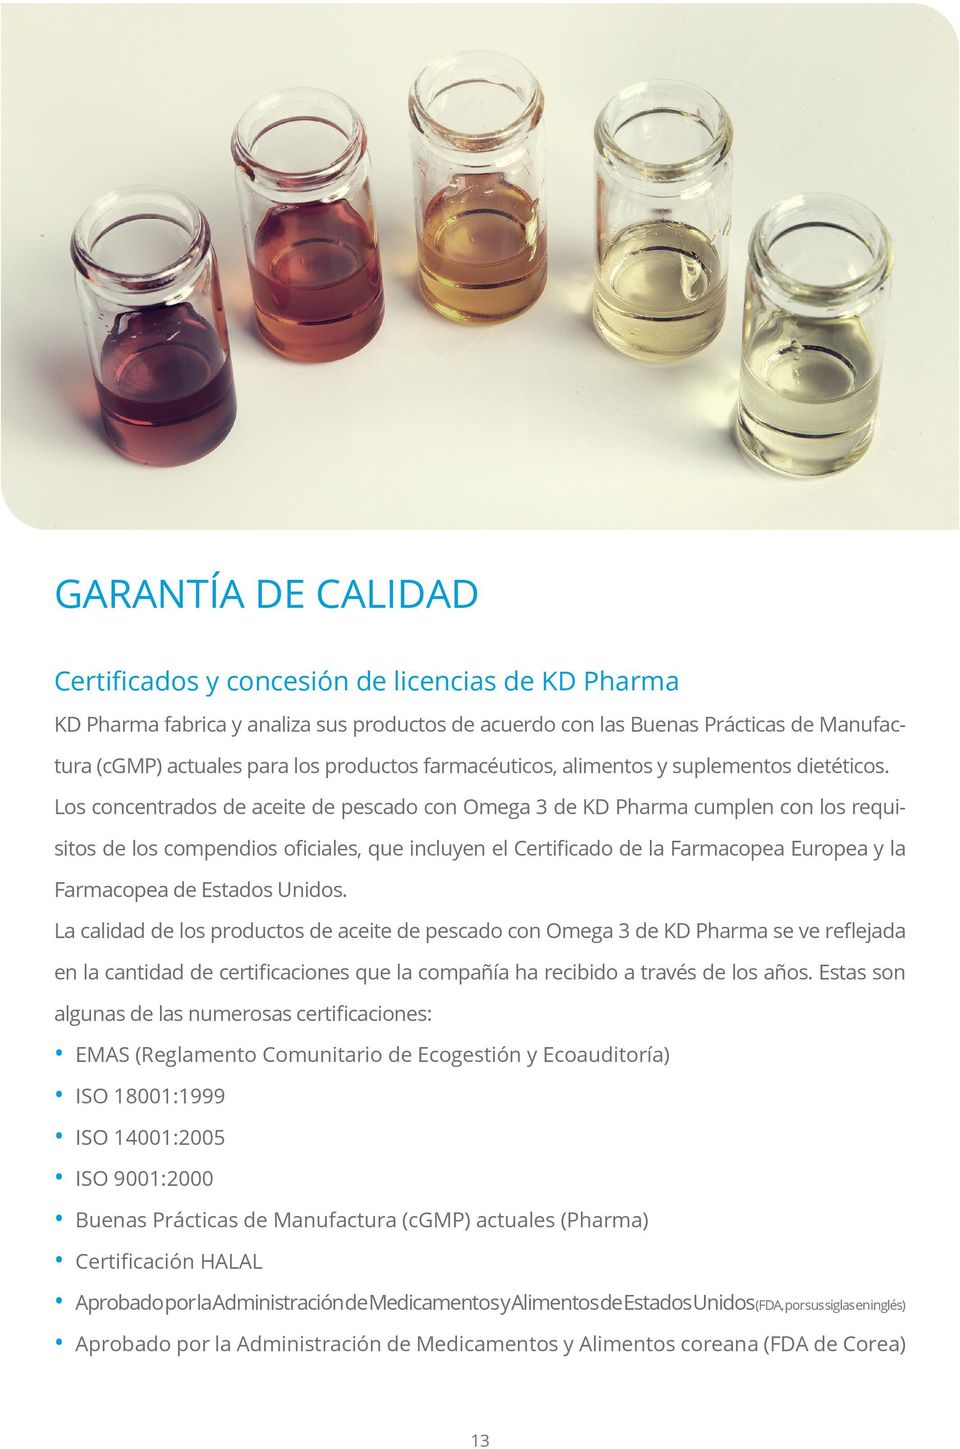 Los concentrados de aceite de pescado con Omega 3 de KD Pharma cumplen con los requisitos de los compendios oficiales, que incluyen el Certificado de la Farmacopea Europea y la Farmacopea de Estados